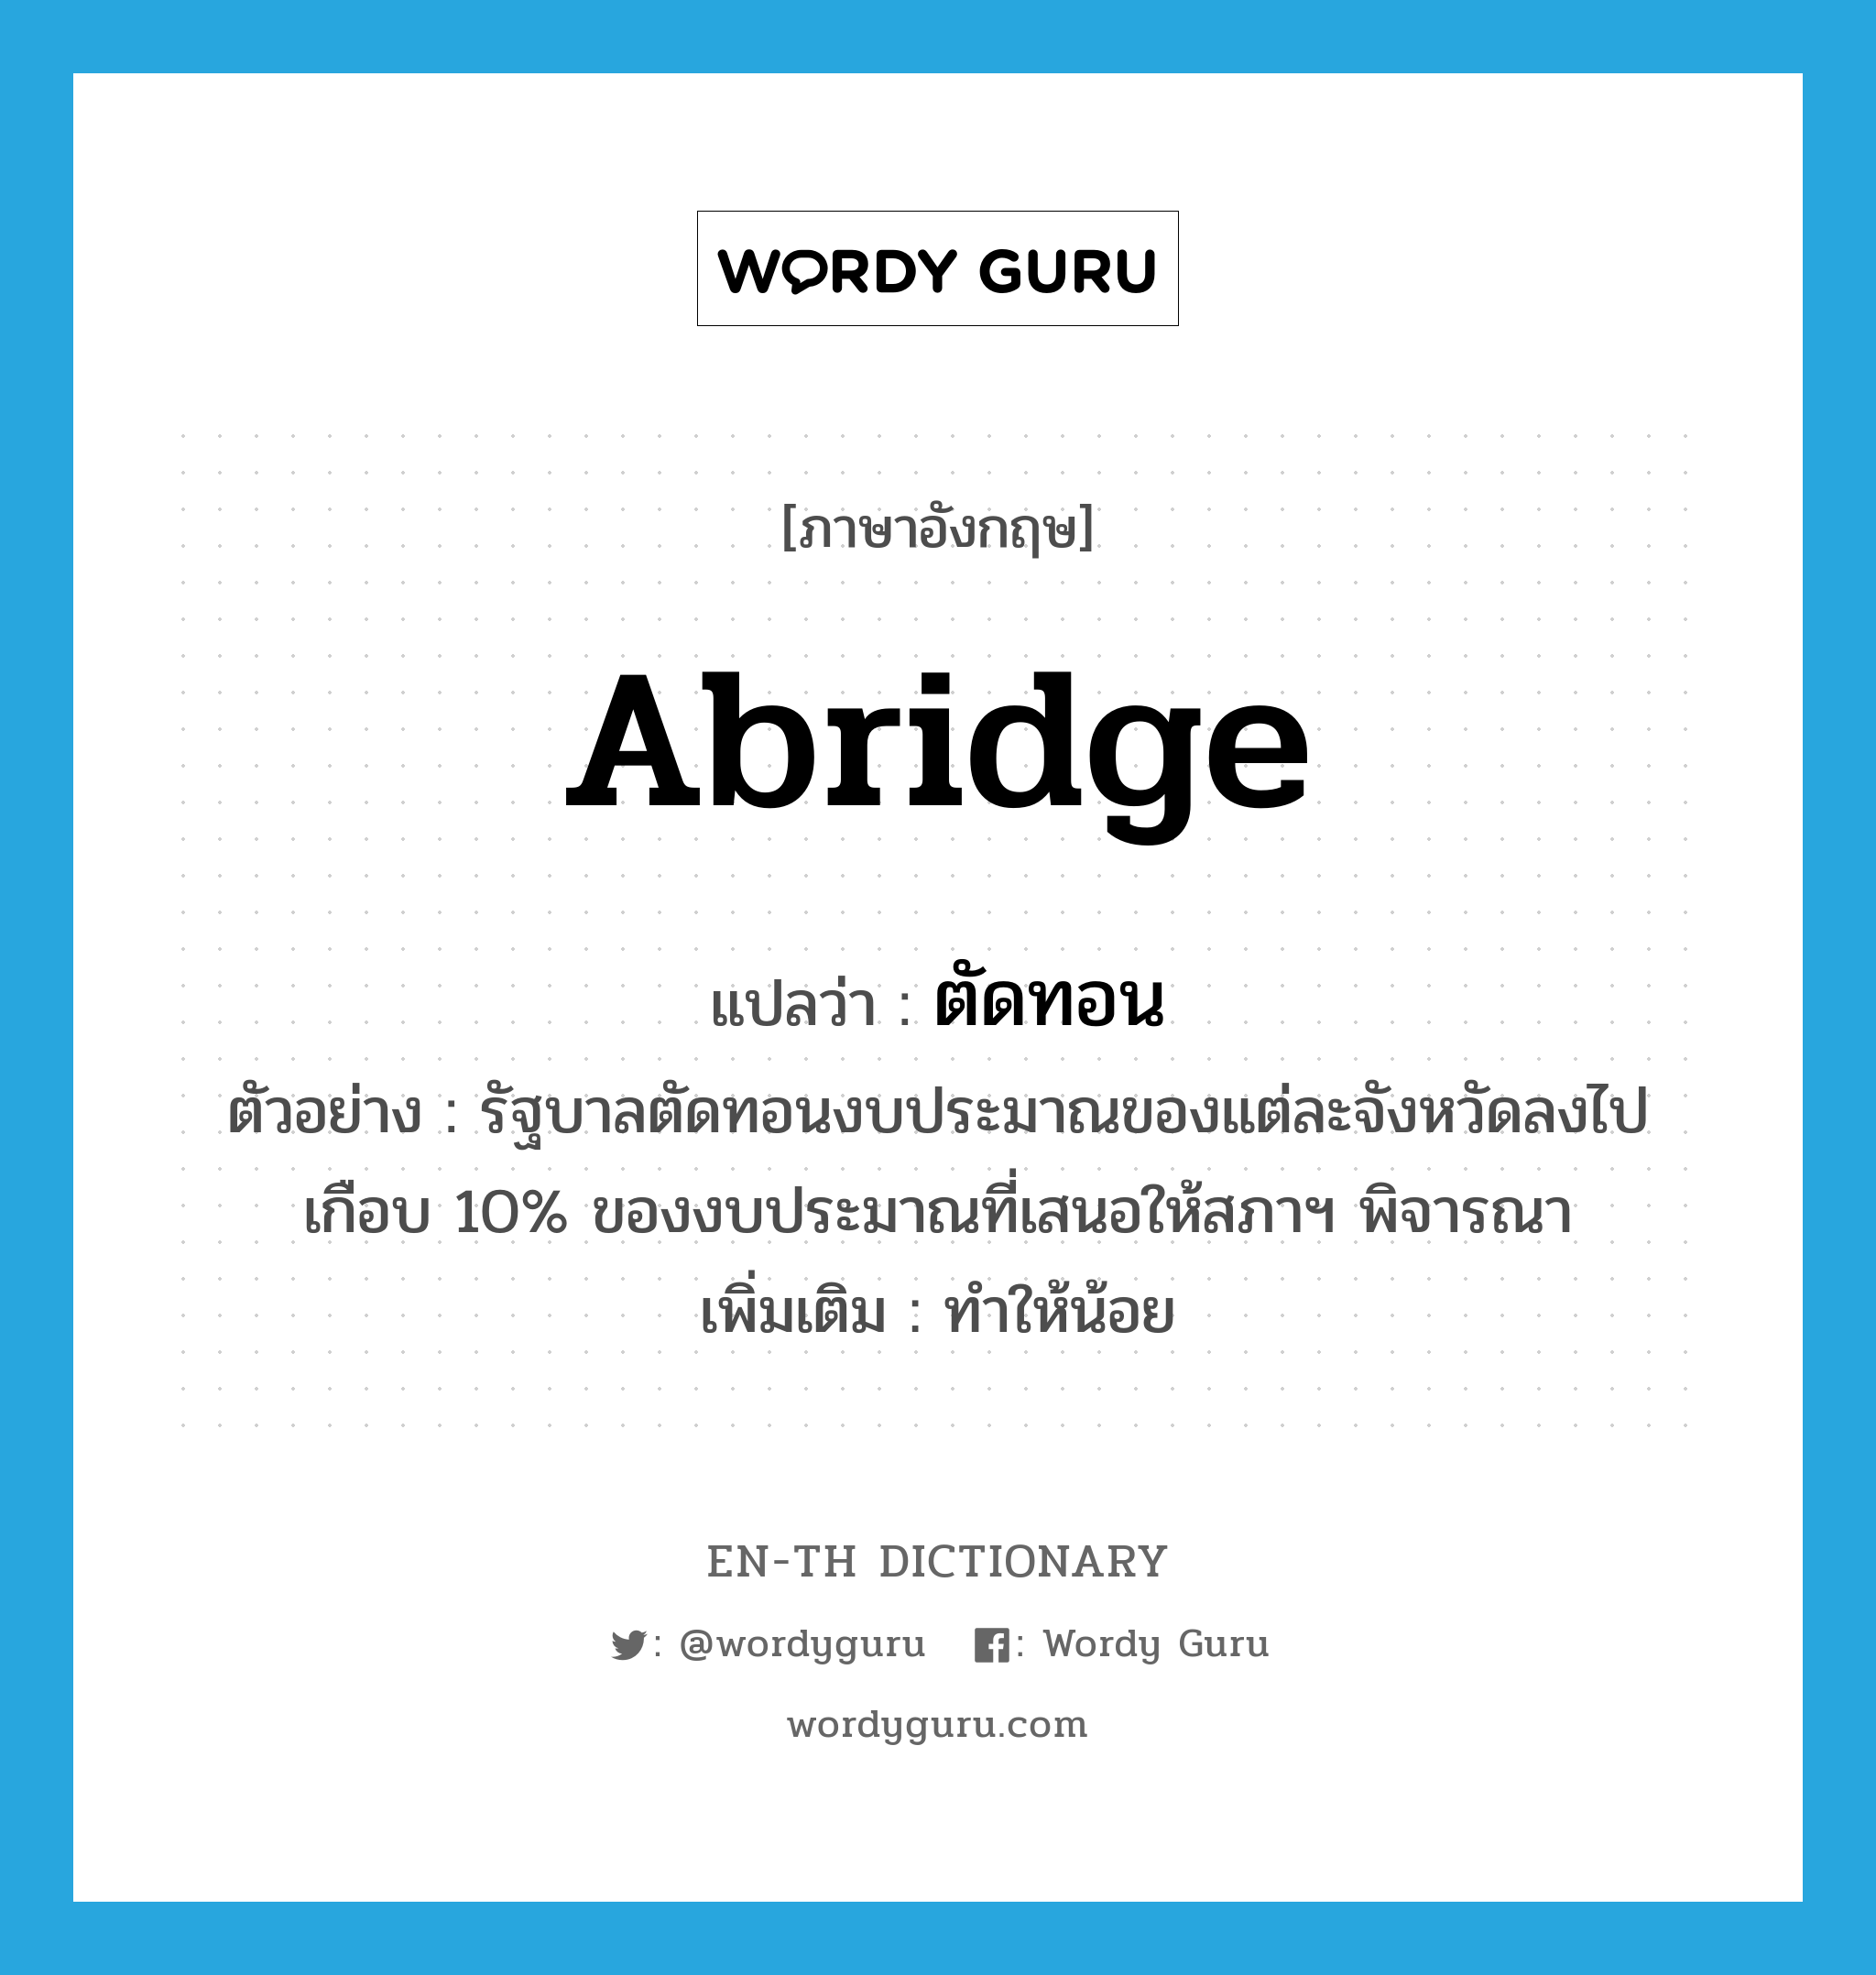 abridge แปลว่า?, คำศัพท์ภาษาอังกฤษ abridge แปลว่า ตัดทอน ประเภท V ตัวอย่าง รัฐบาลตัดทอนงบประมาณของแต่ละจังหวัดลงไปเกือบ 10% ของงบประมาณที่เสนอให้สภาฯ พิจารณา เพิ่มเติม ทำให้น้อย หมวด V